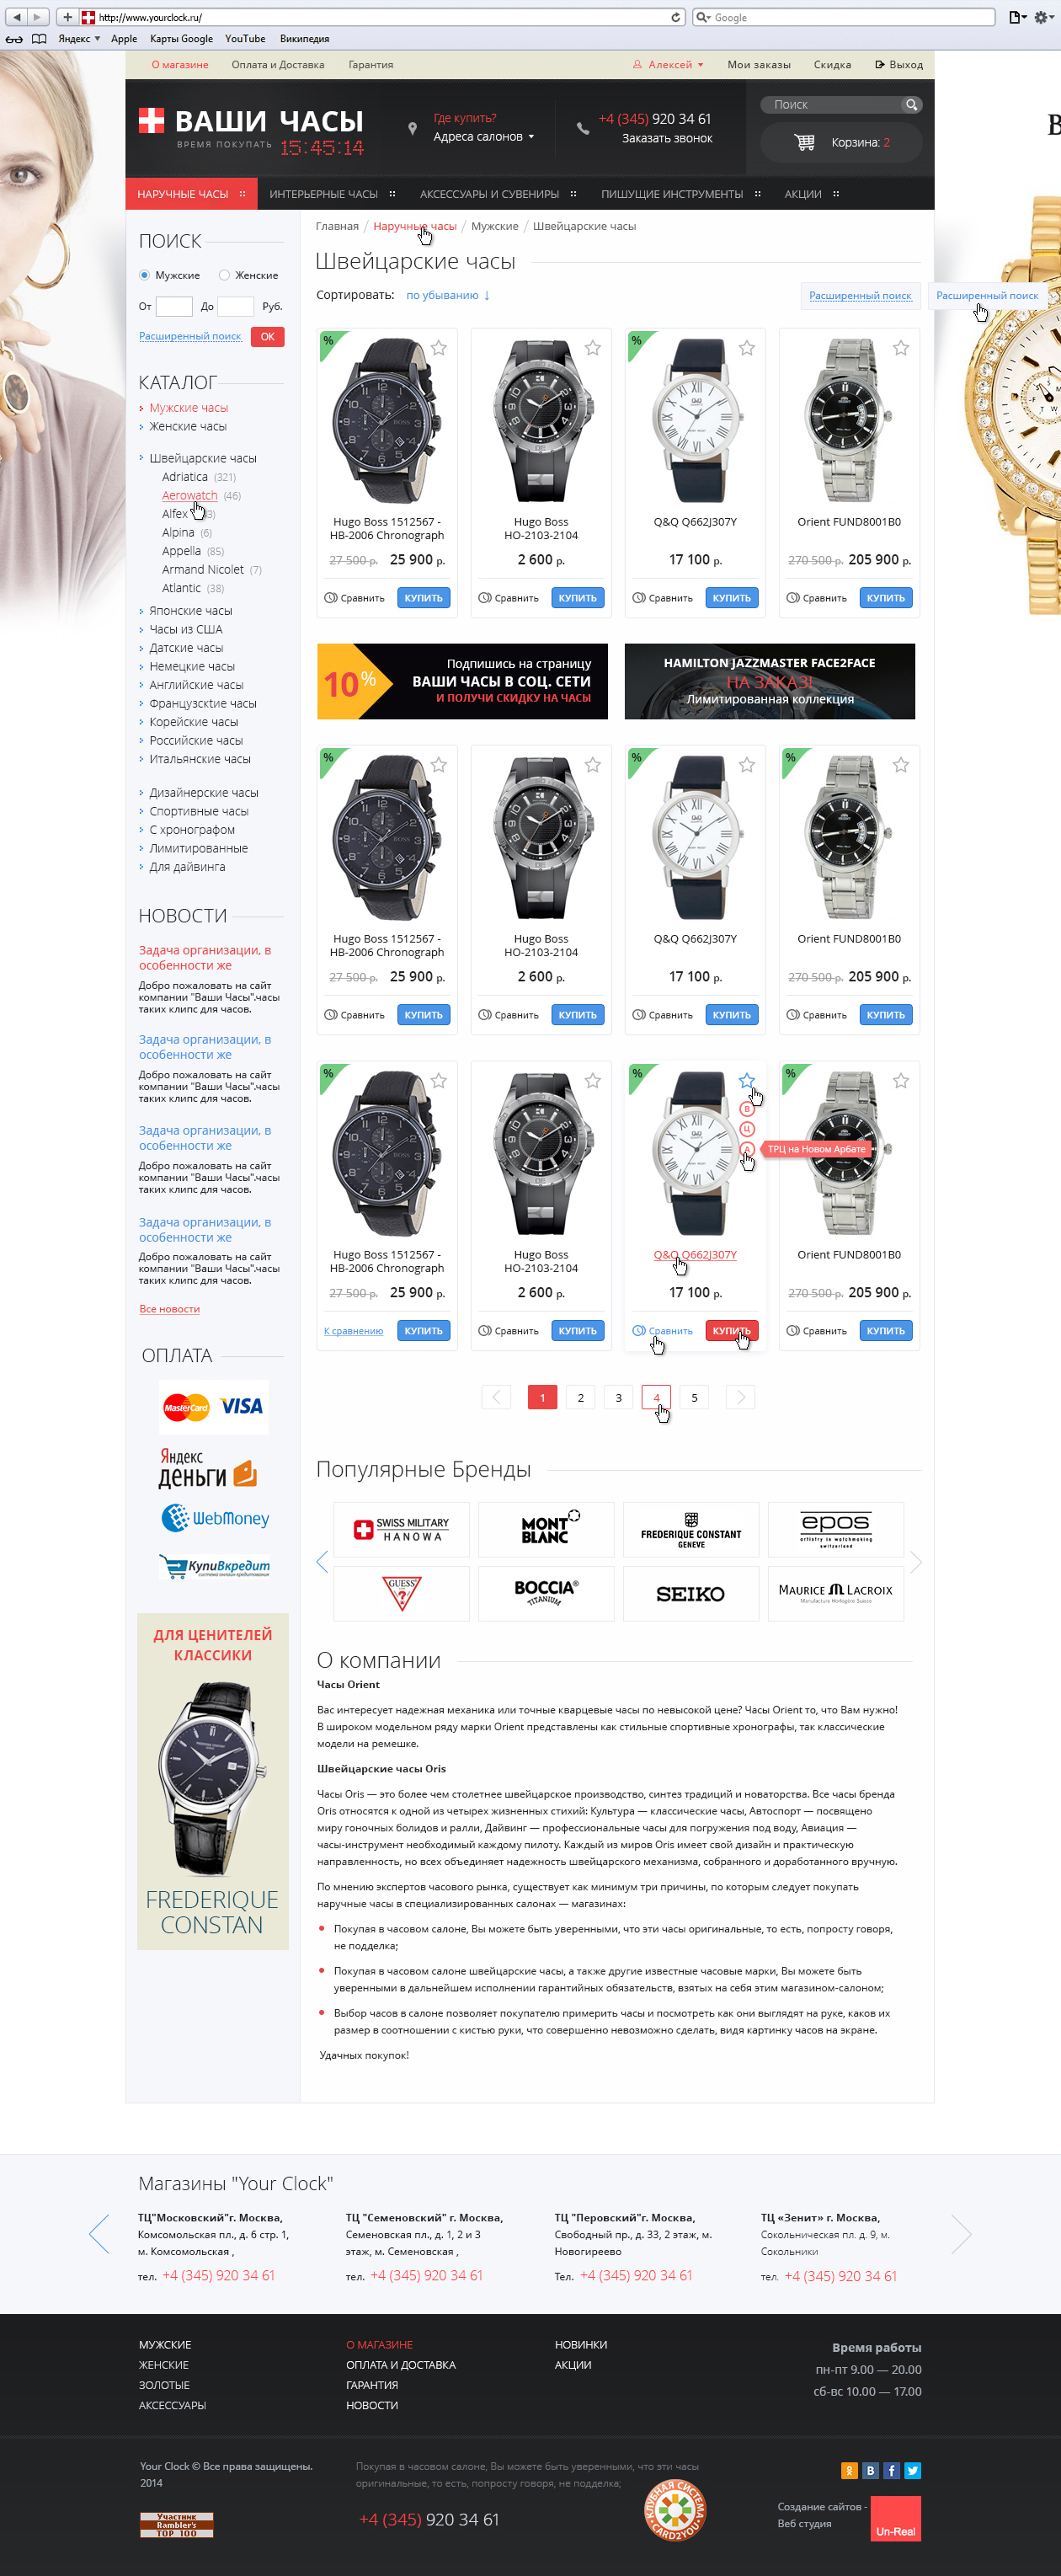 Решение E-commerce. Интернет-магазин  часов Ваши часы